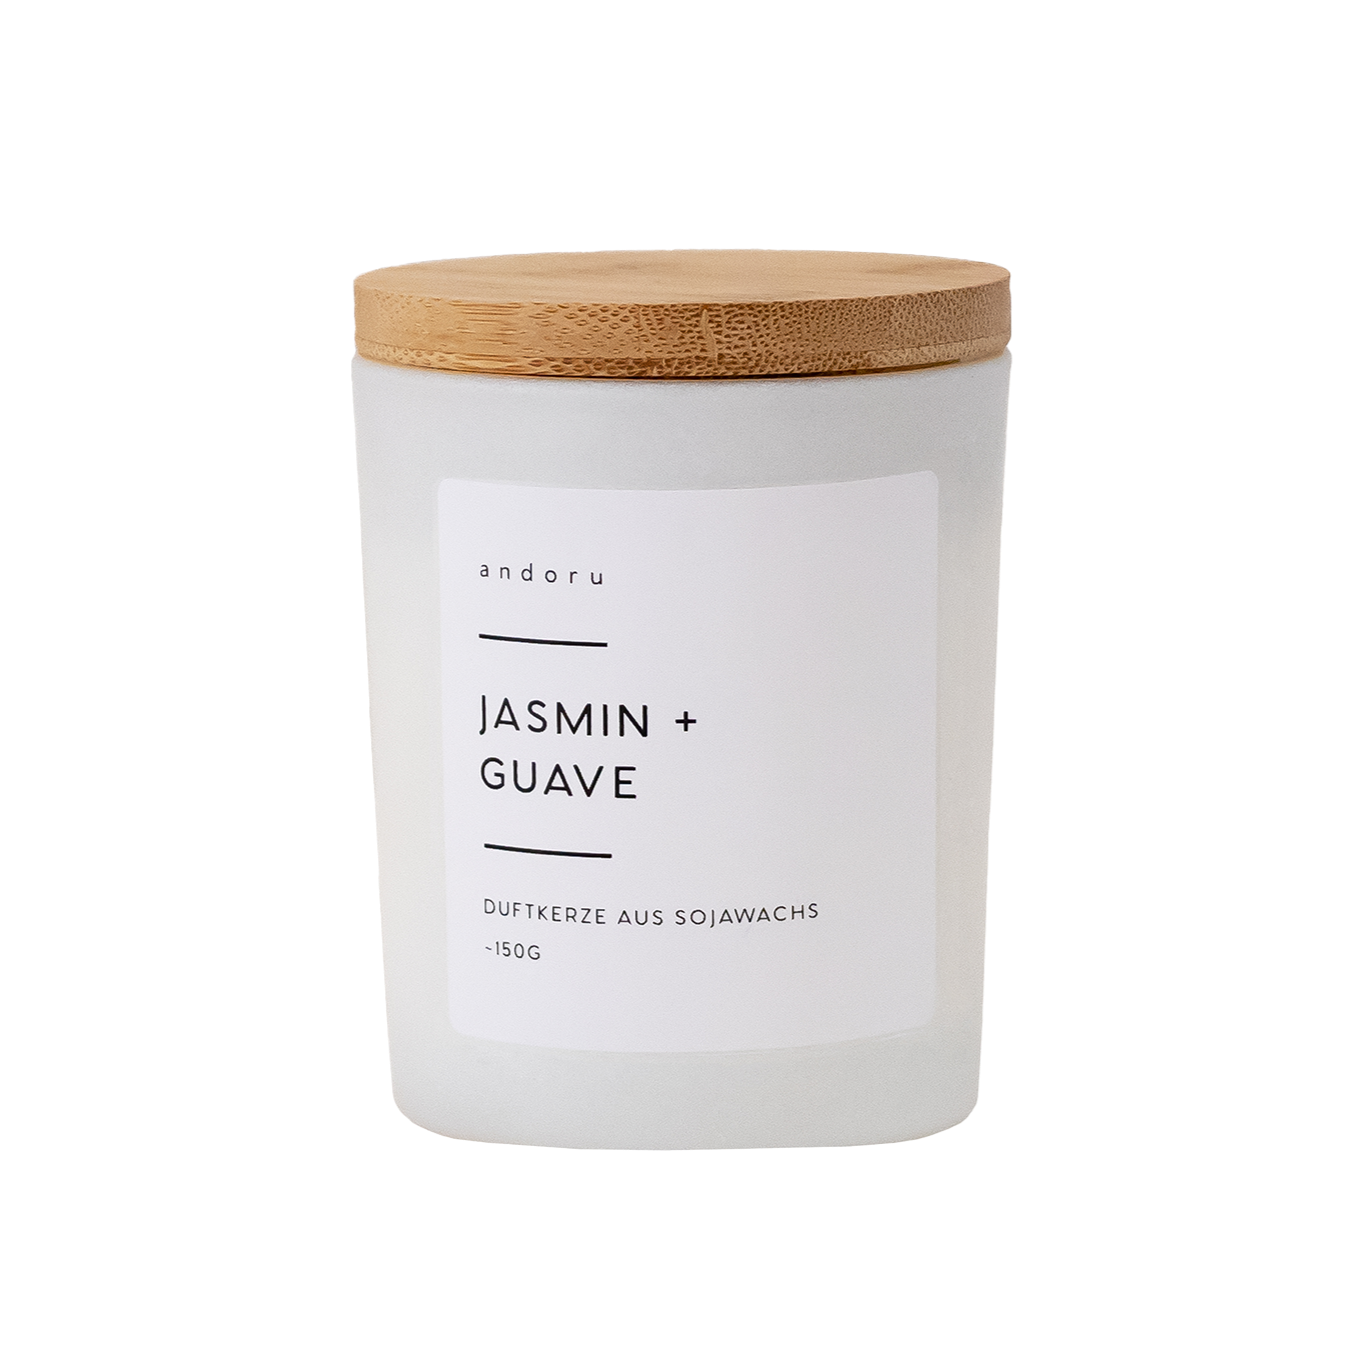 Jasmin + Guave - andoru Duftkerze im weißen Glas mit Deckel aus Holz